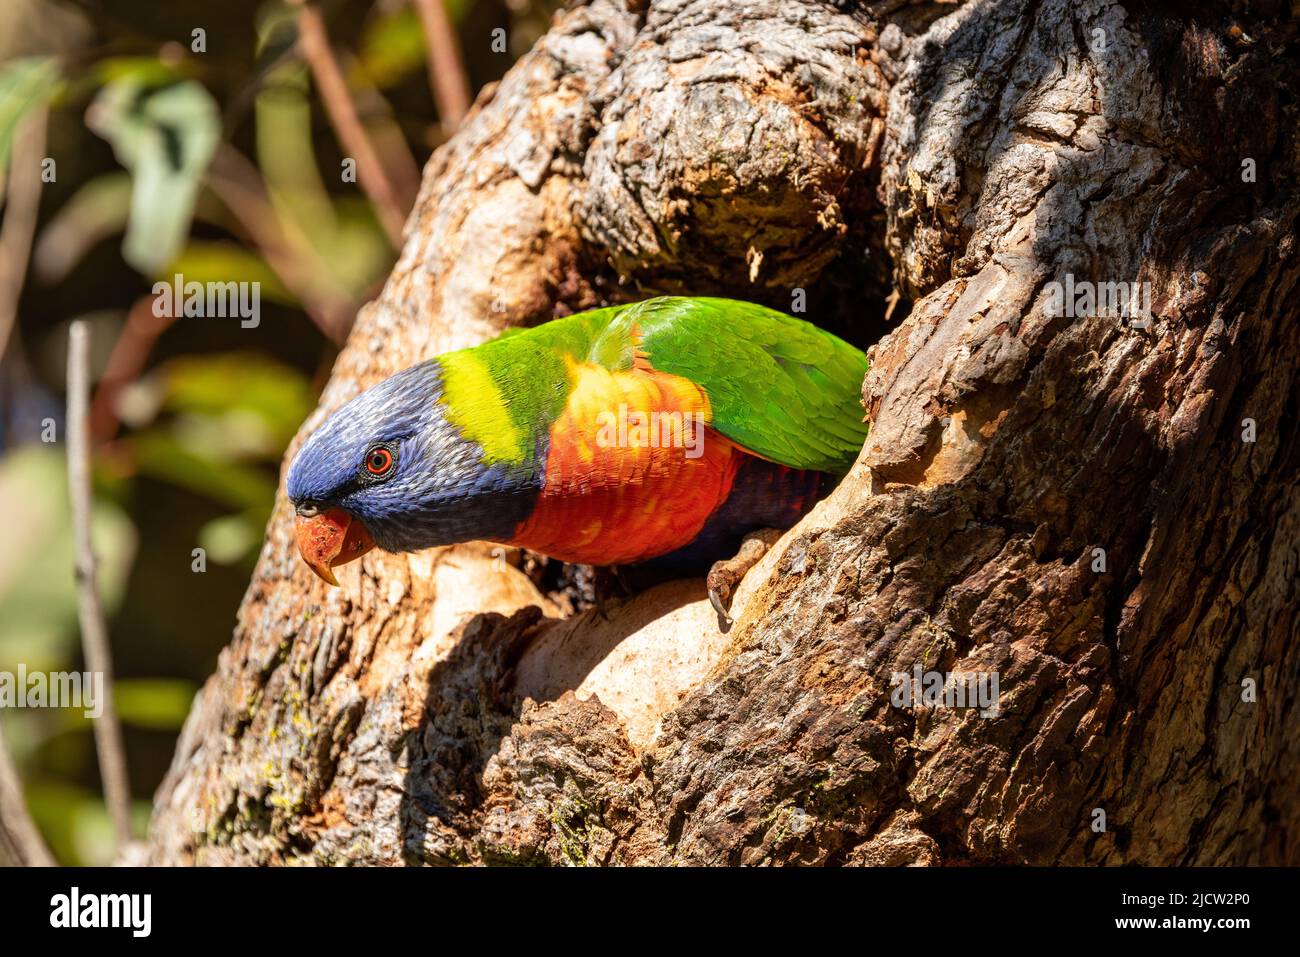 Australian Rainbow Lorikeet at nest entrance Stock Photo